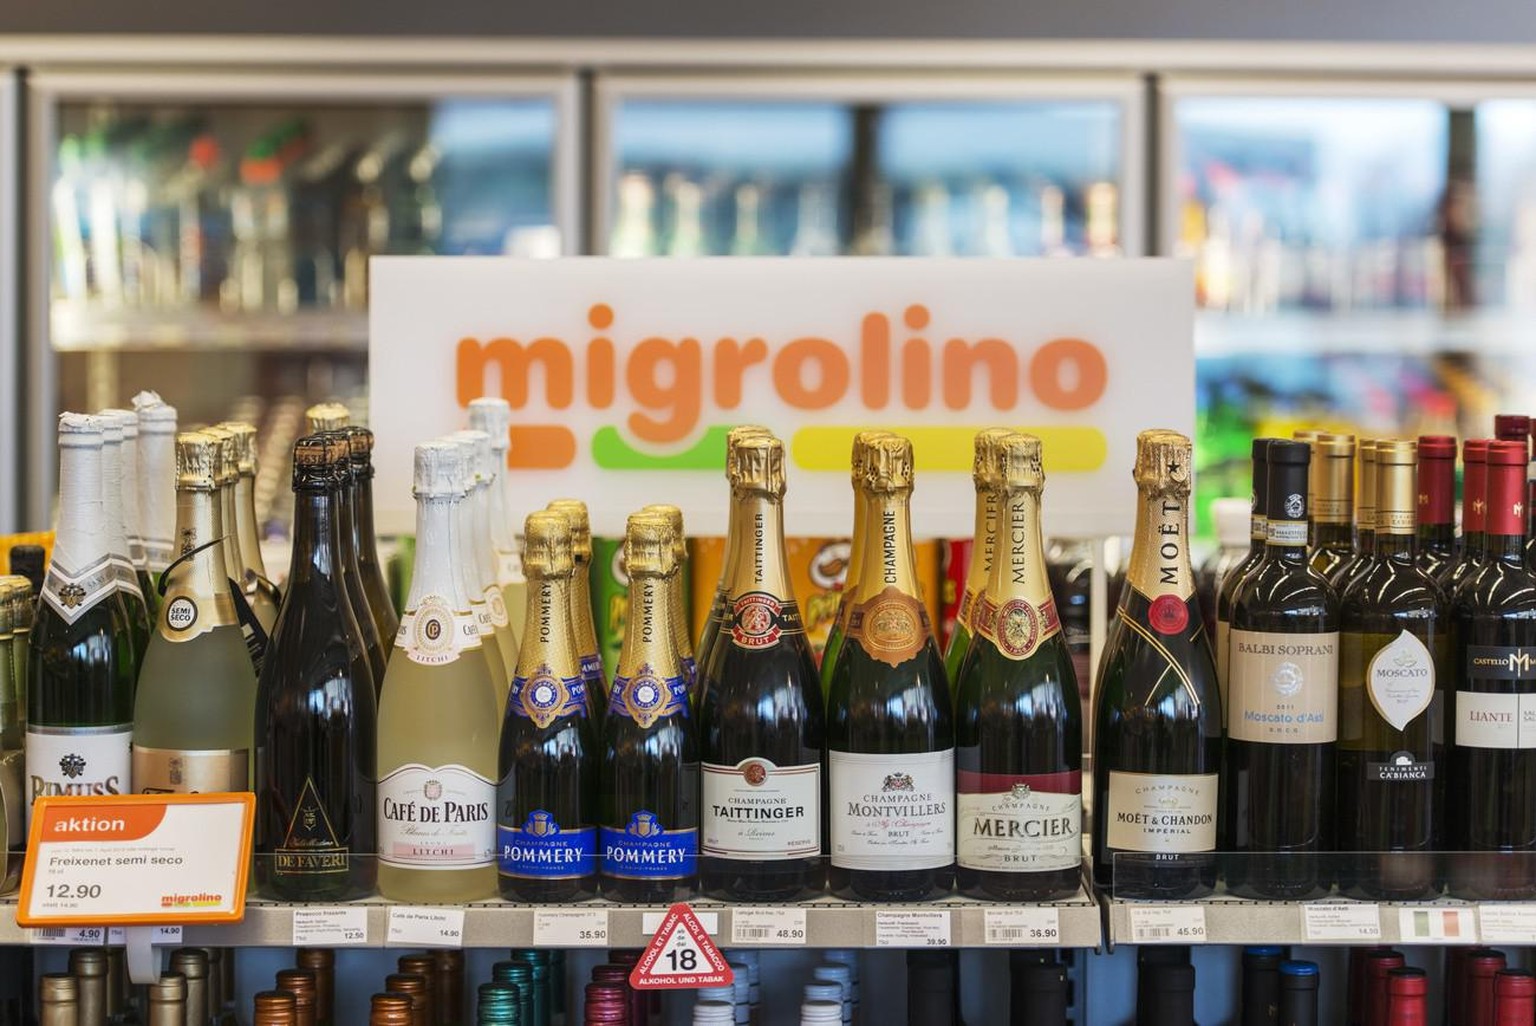 Champagnerflaschen im Regal der Migrolino-Tankstelle in Stans, Kanton Nidwalden, aufgenommen am 22. Maerz 2013. Die Migrolino-Filialen verkaufen neben Migros-Produkten auch Alkohol und Zigaretten und  ...